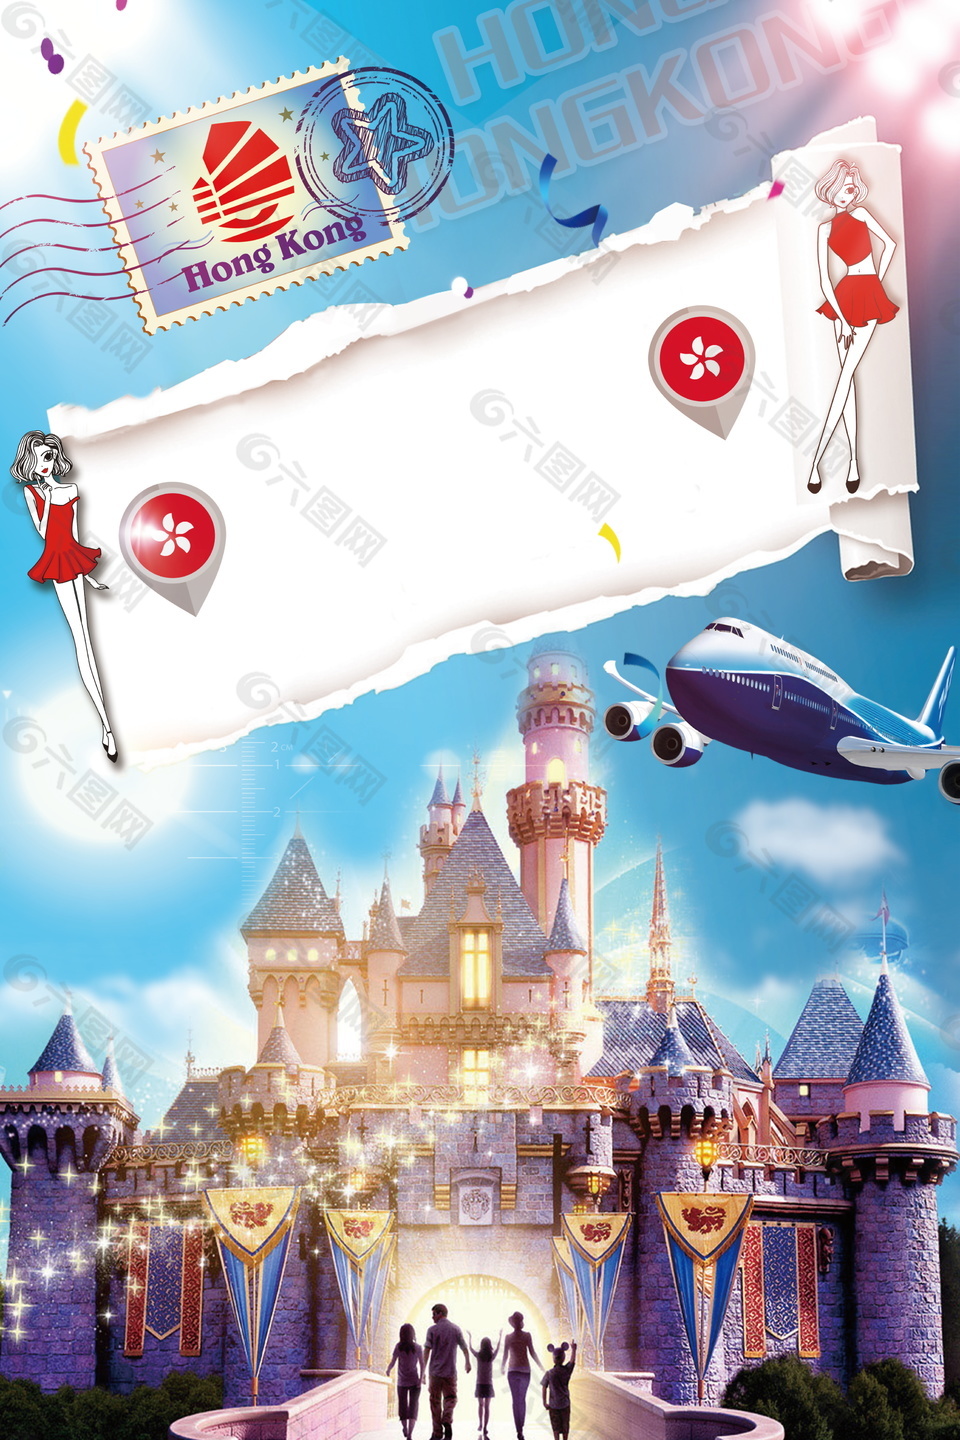 炫酷迪士尼香港旅游广告背景素材